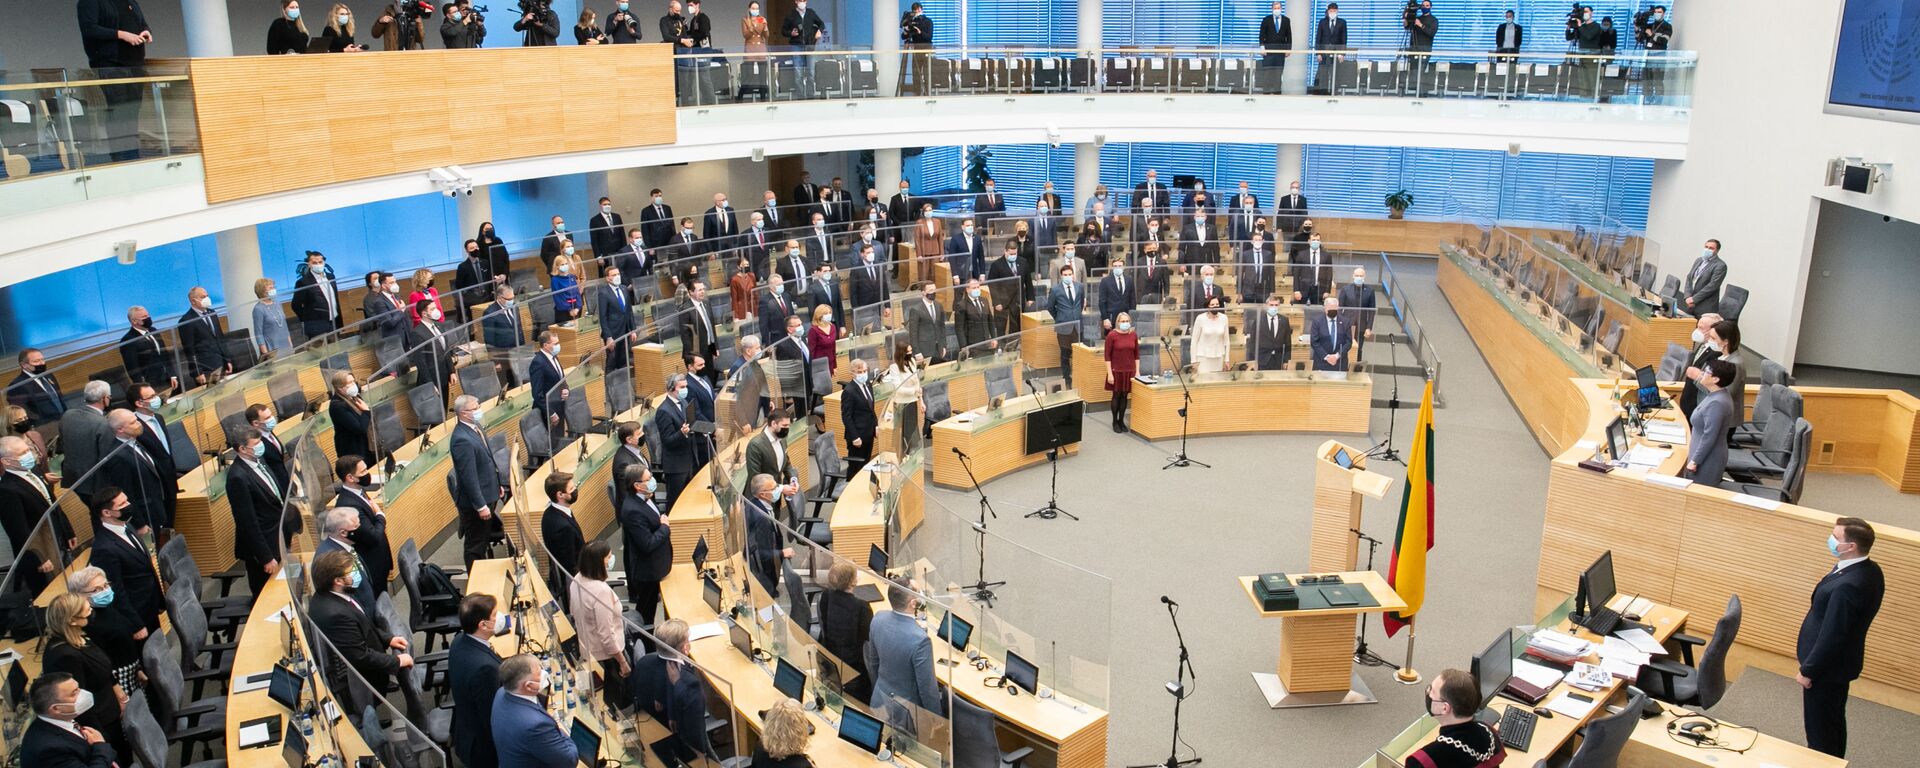 Первое заседание весенней сессии Сейма Литвы, 10 марта 2021 - Sputnik Литва, 1920, 22.04.2021